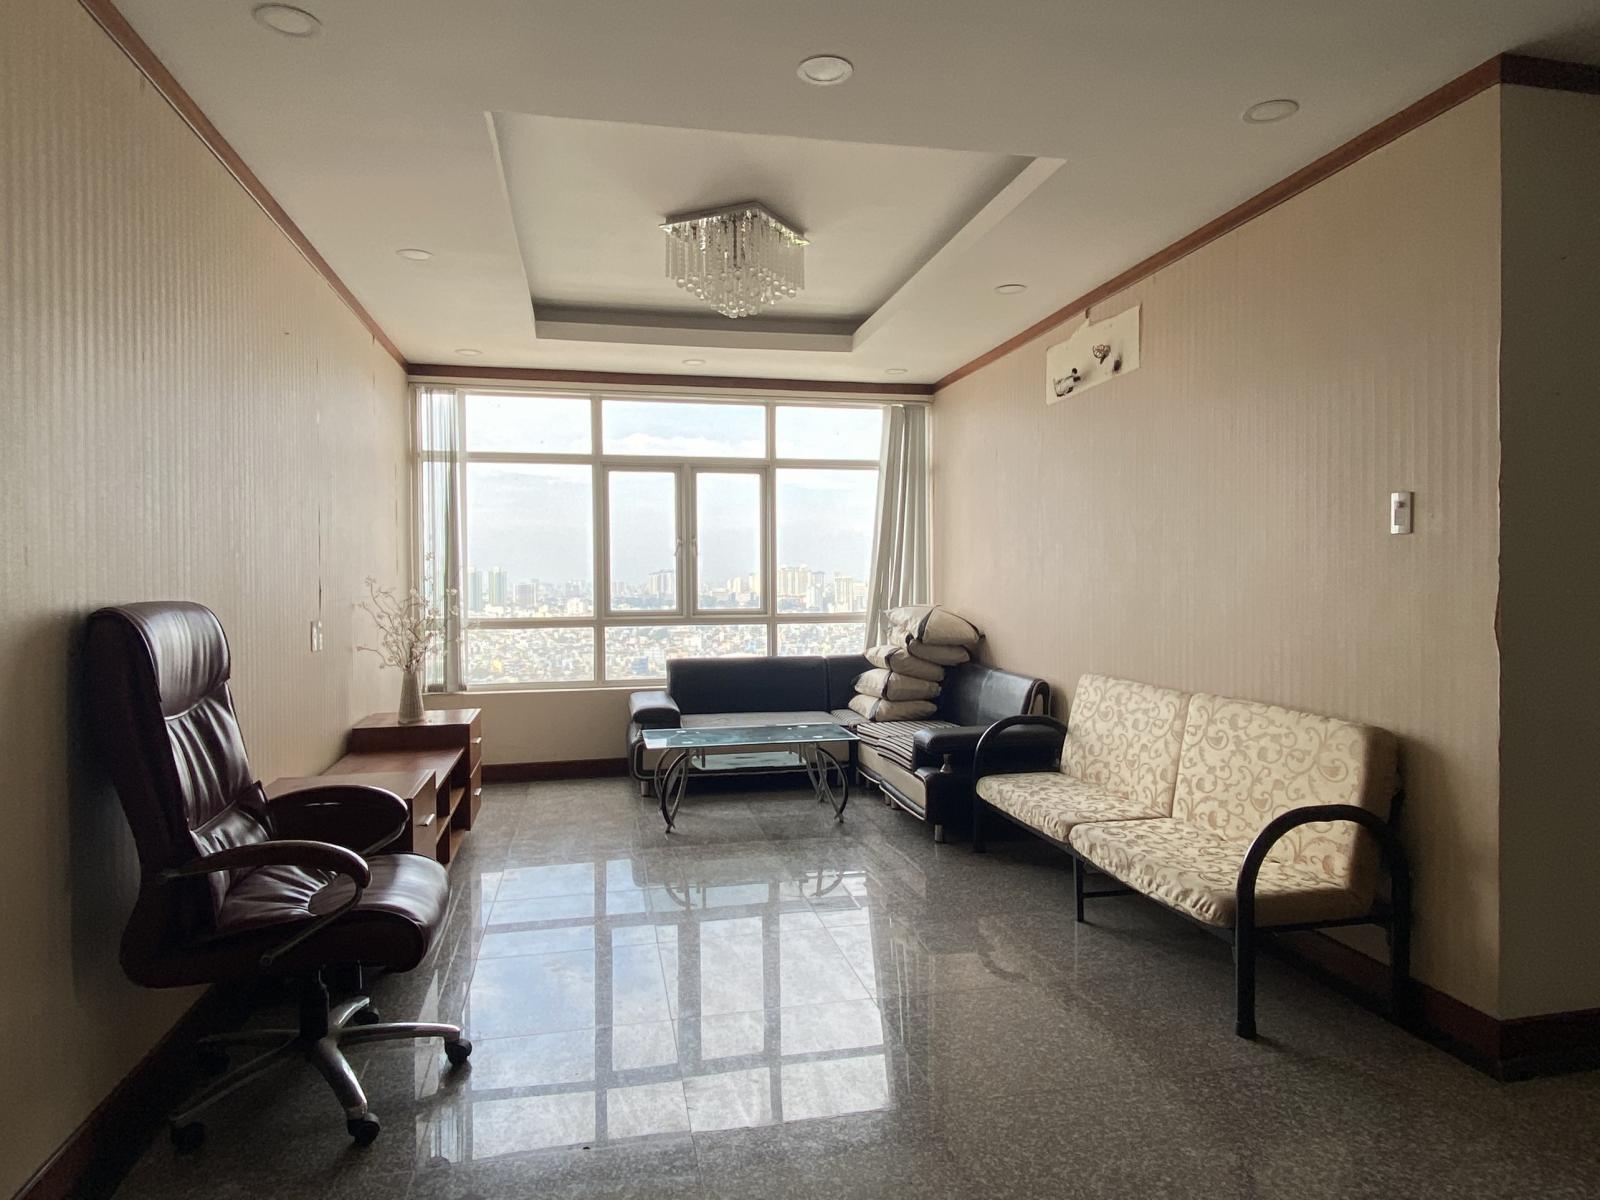 Cần cho thuê căn hộ chung cư Giai Việt Q.8 S150 m, 3 phòng ngủ,  có nội thất, nhà đẹp,lầu cao thoáng mát